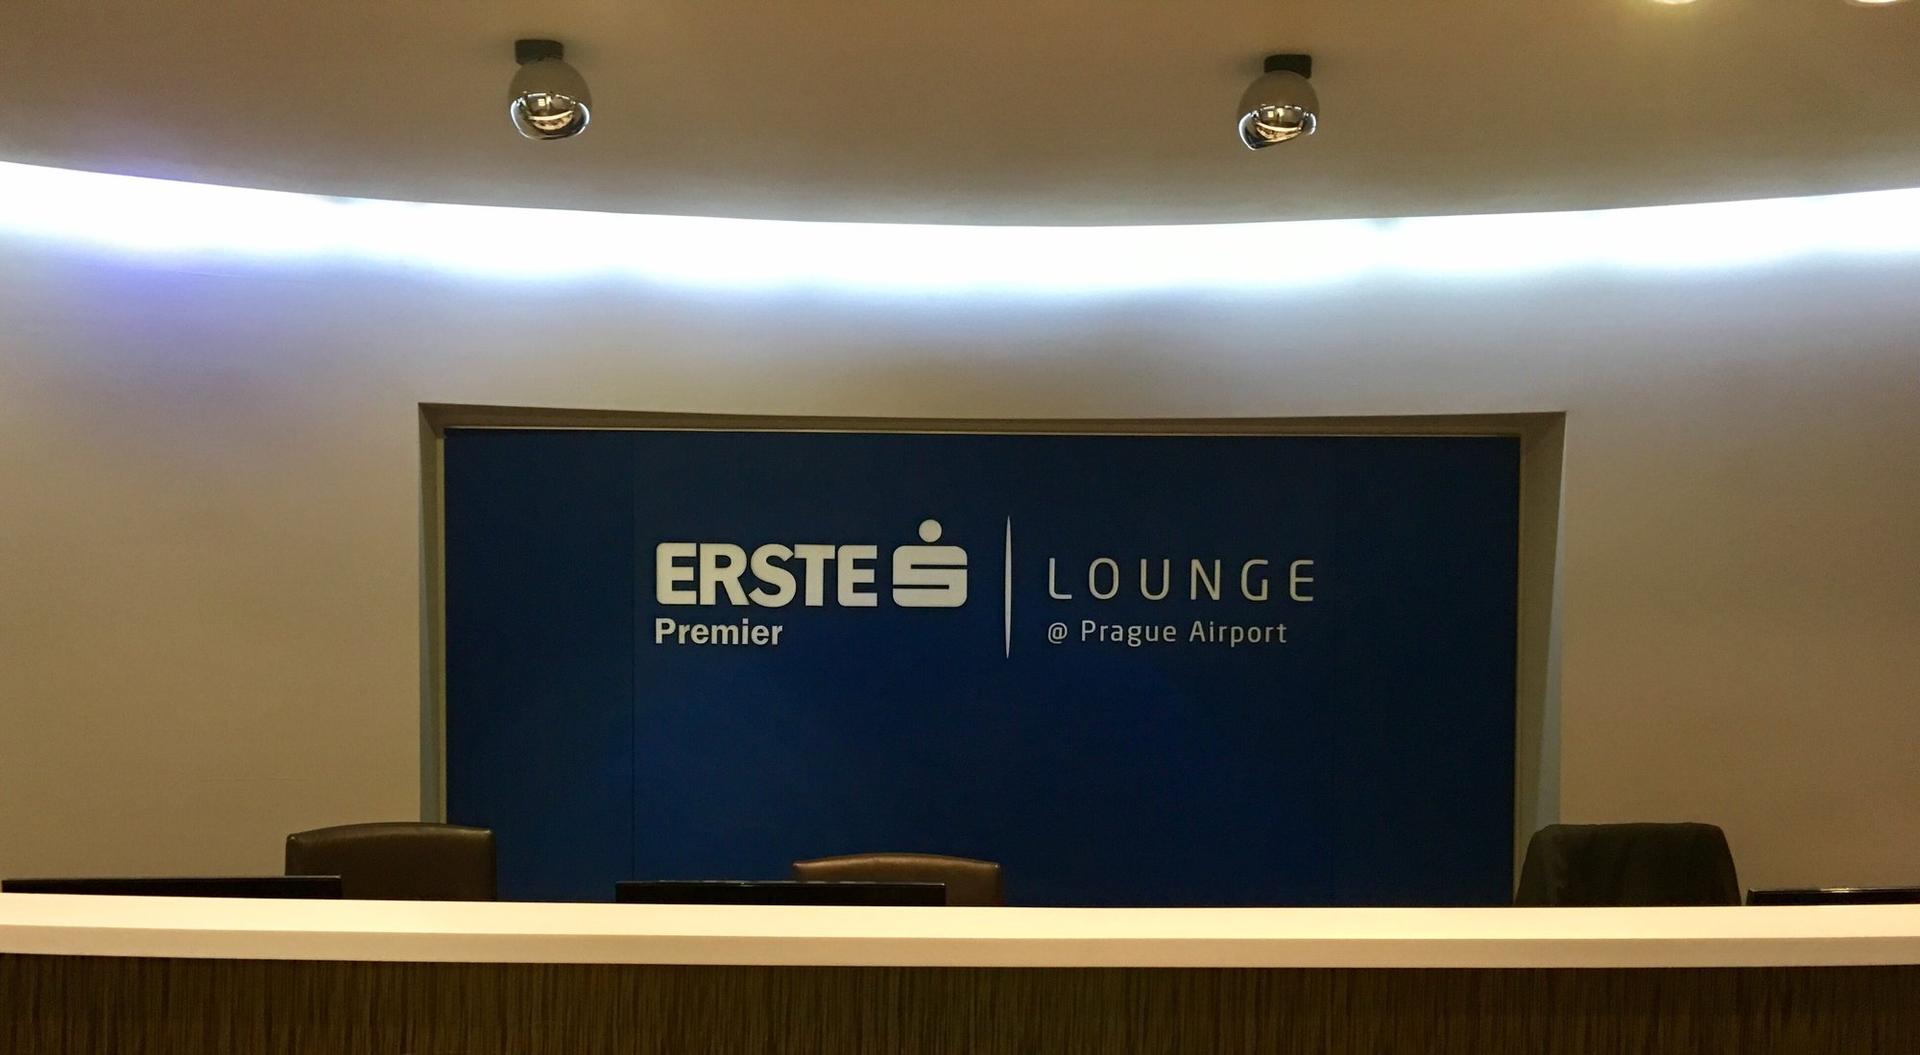 Erste Premier Lounge image 23 of 72